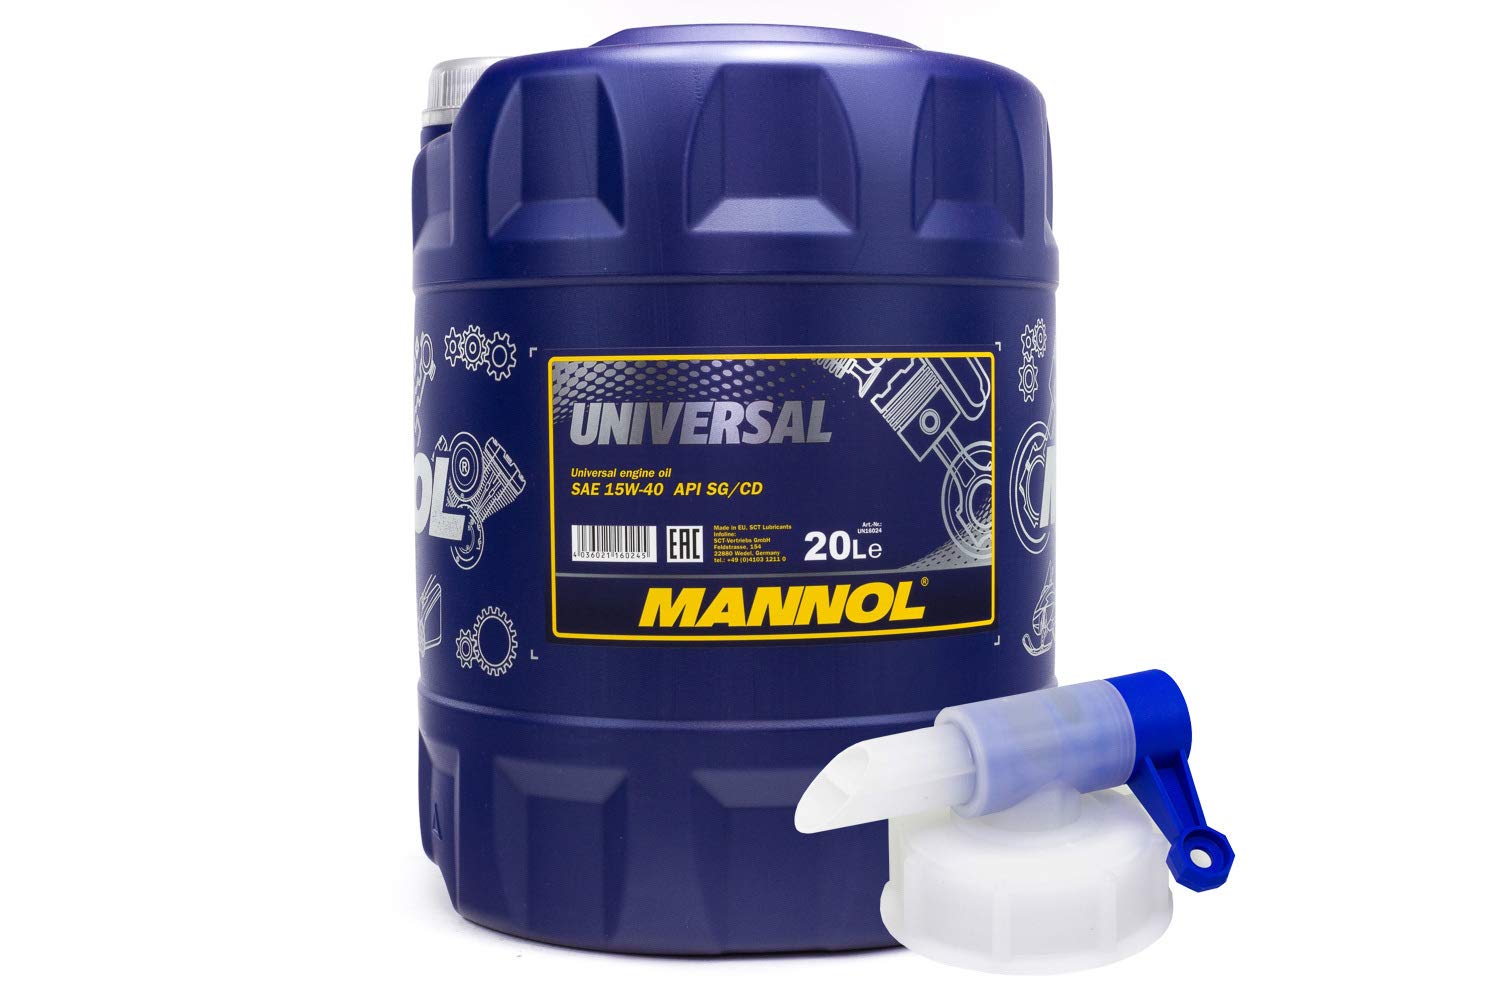 Motoröl Mannol 15W-40 Universal API SG/CD 20 Liter inkl Auslasshahn Motor Öl Oil von MVH Bockauf